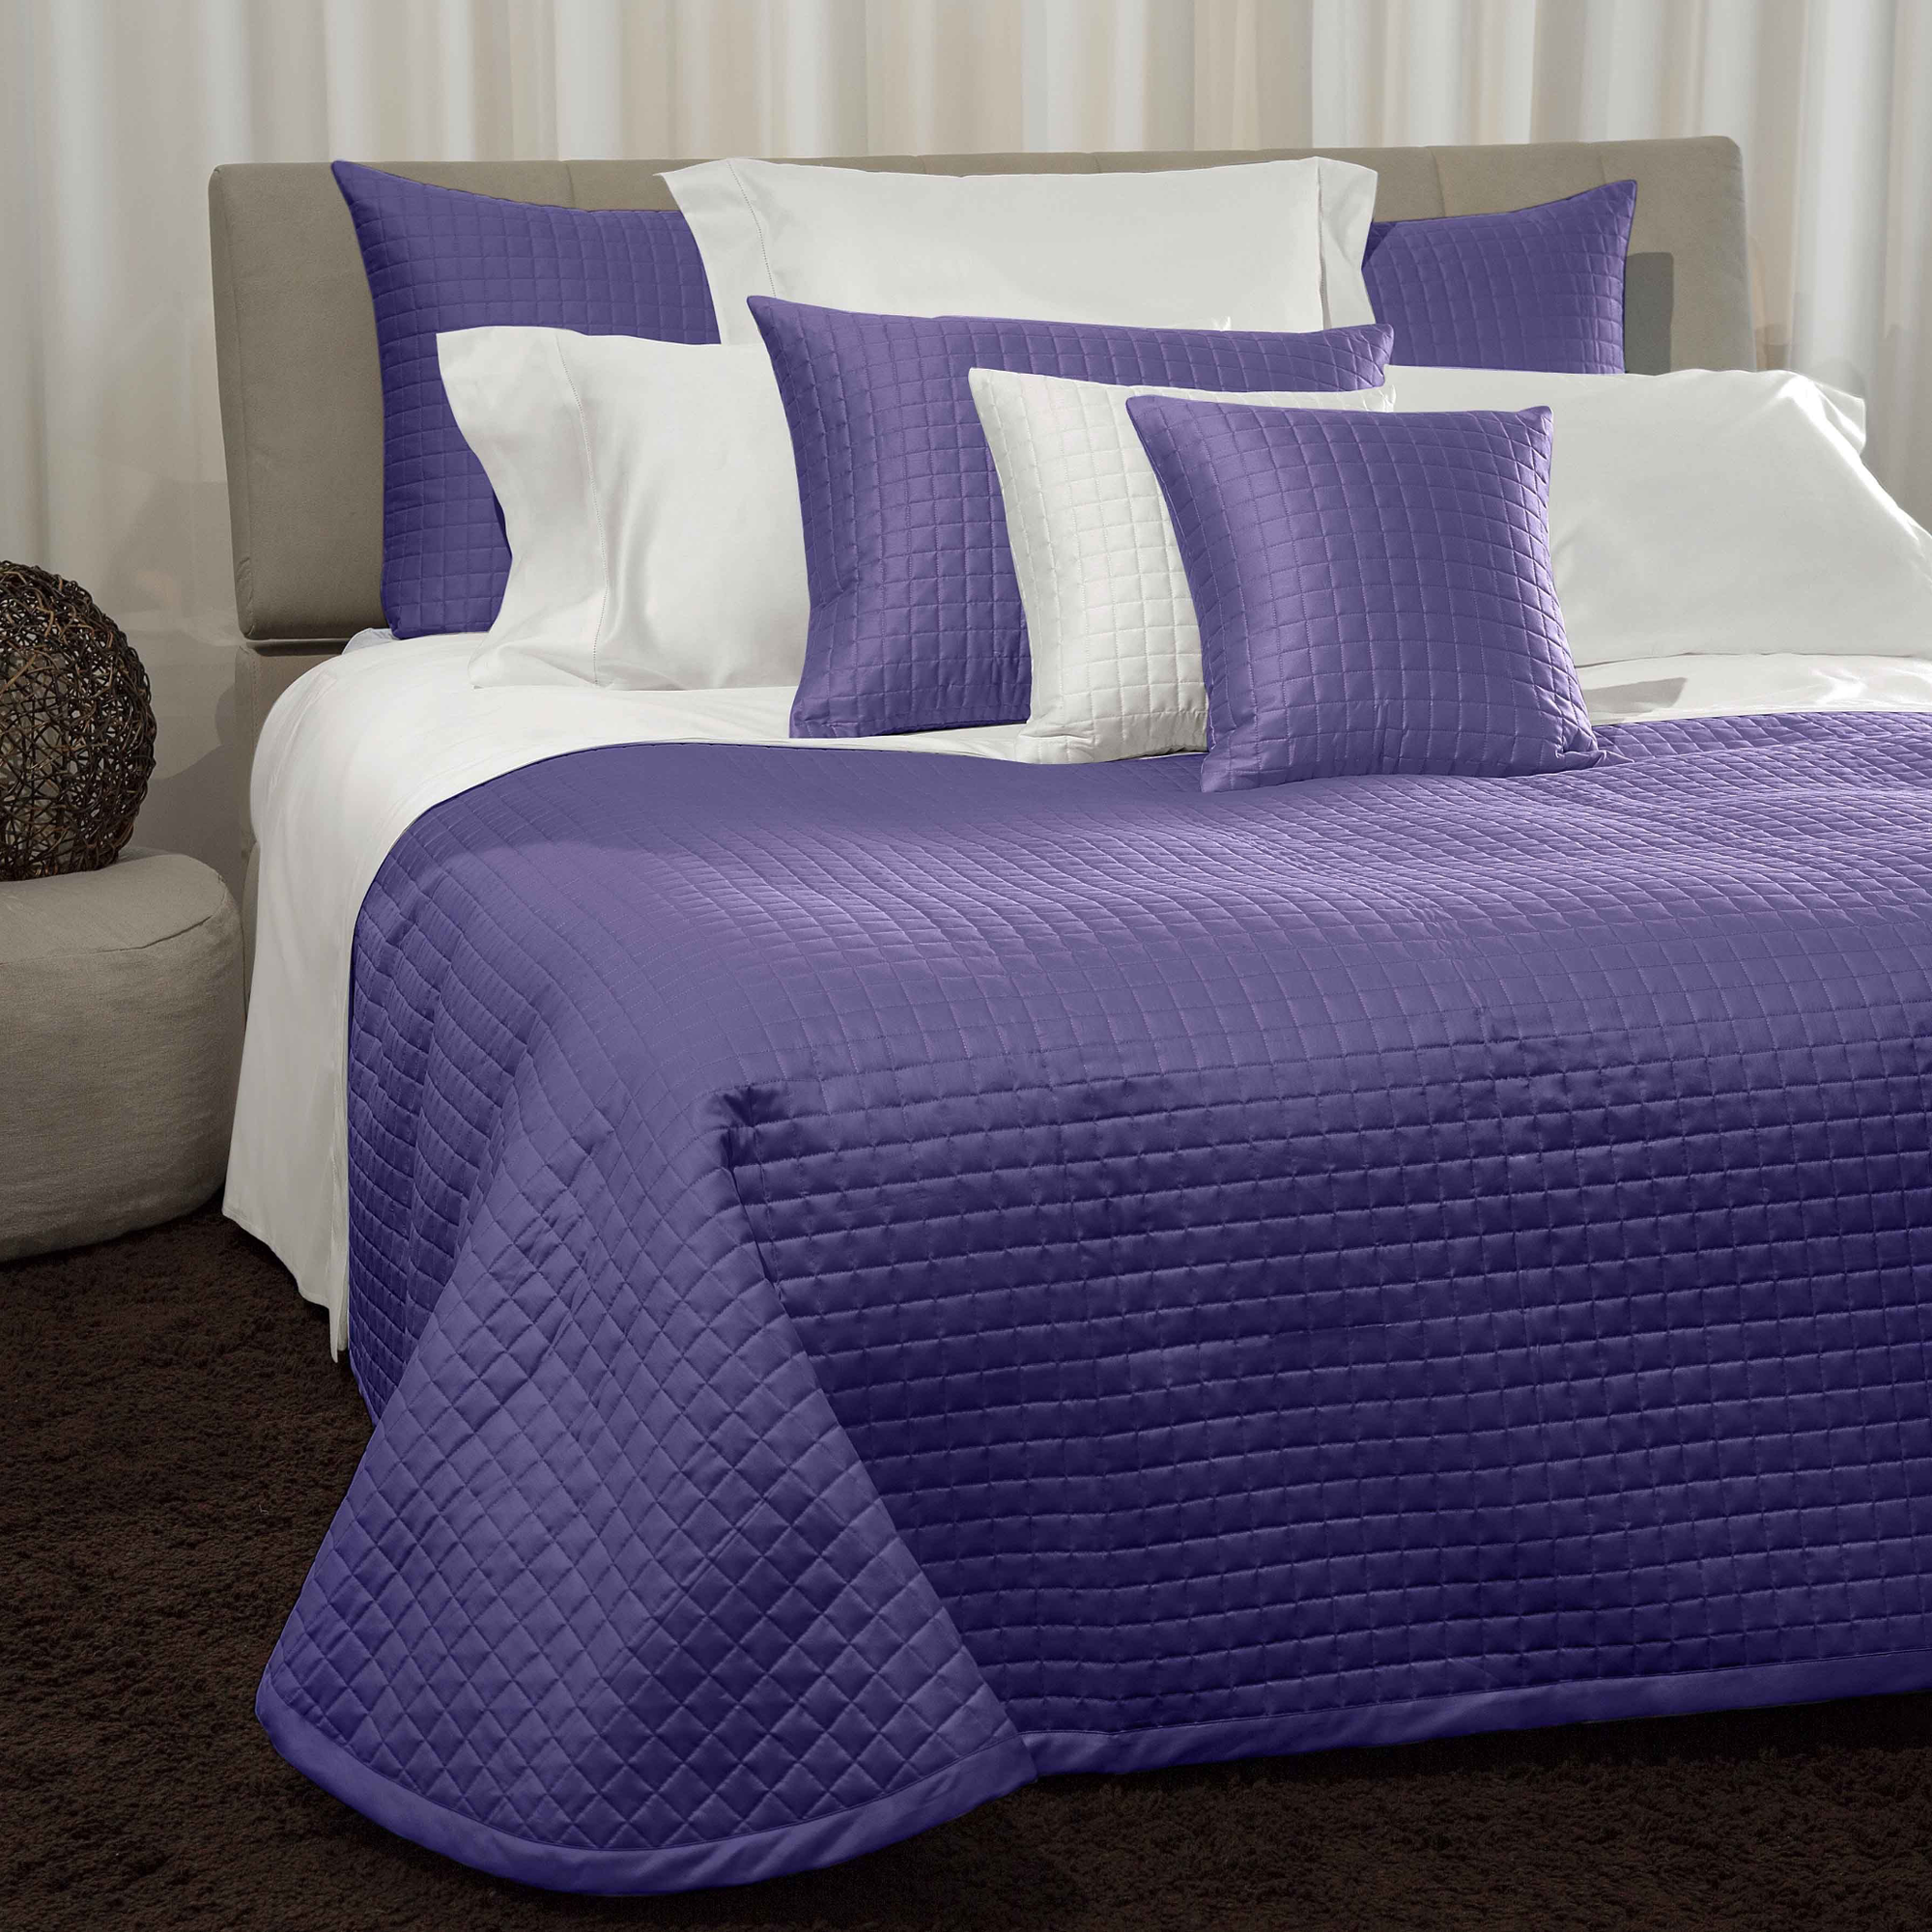 Bed Dressed in Signoria Masaccio Bedding in Violet Color